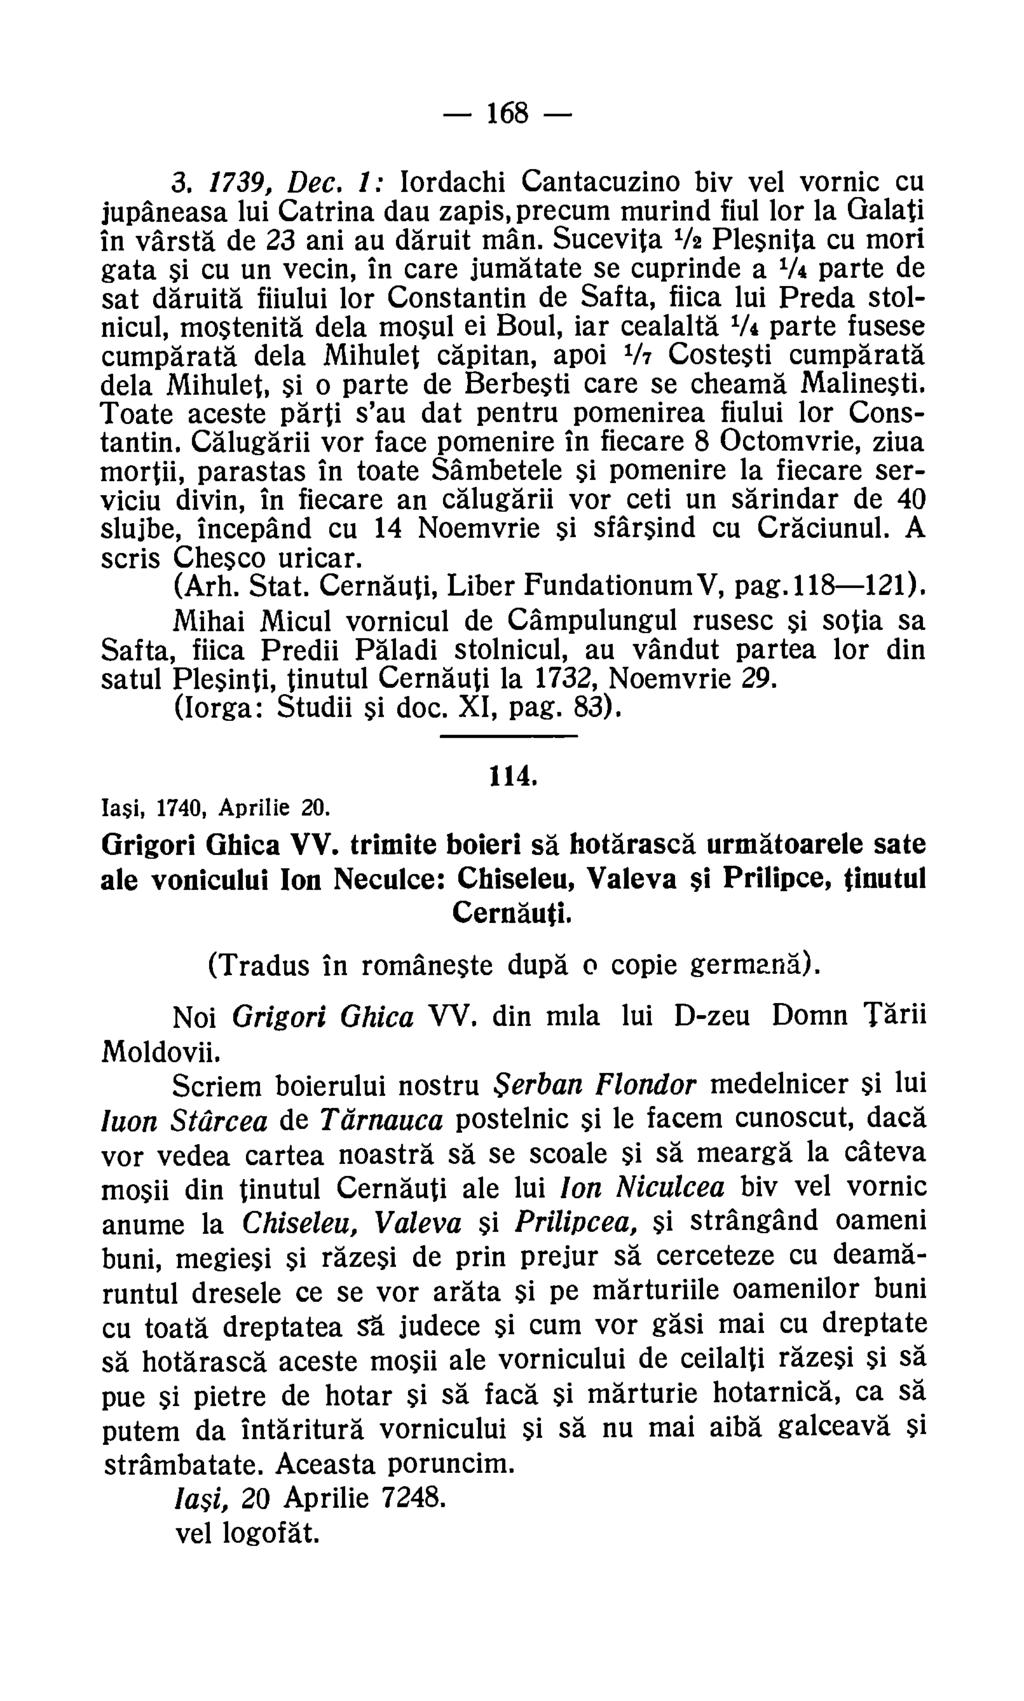 168 3. 1739, Dec. 1: Iordachi Cantacuzino biv vel vornic cu jupaneasa lui Catrina dau zapis, precum murind fiul for la Galati in varsta de 23 ani au daruit man.